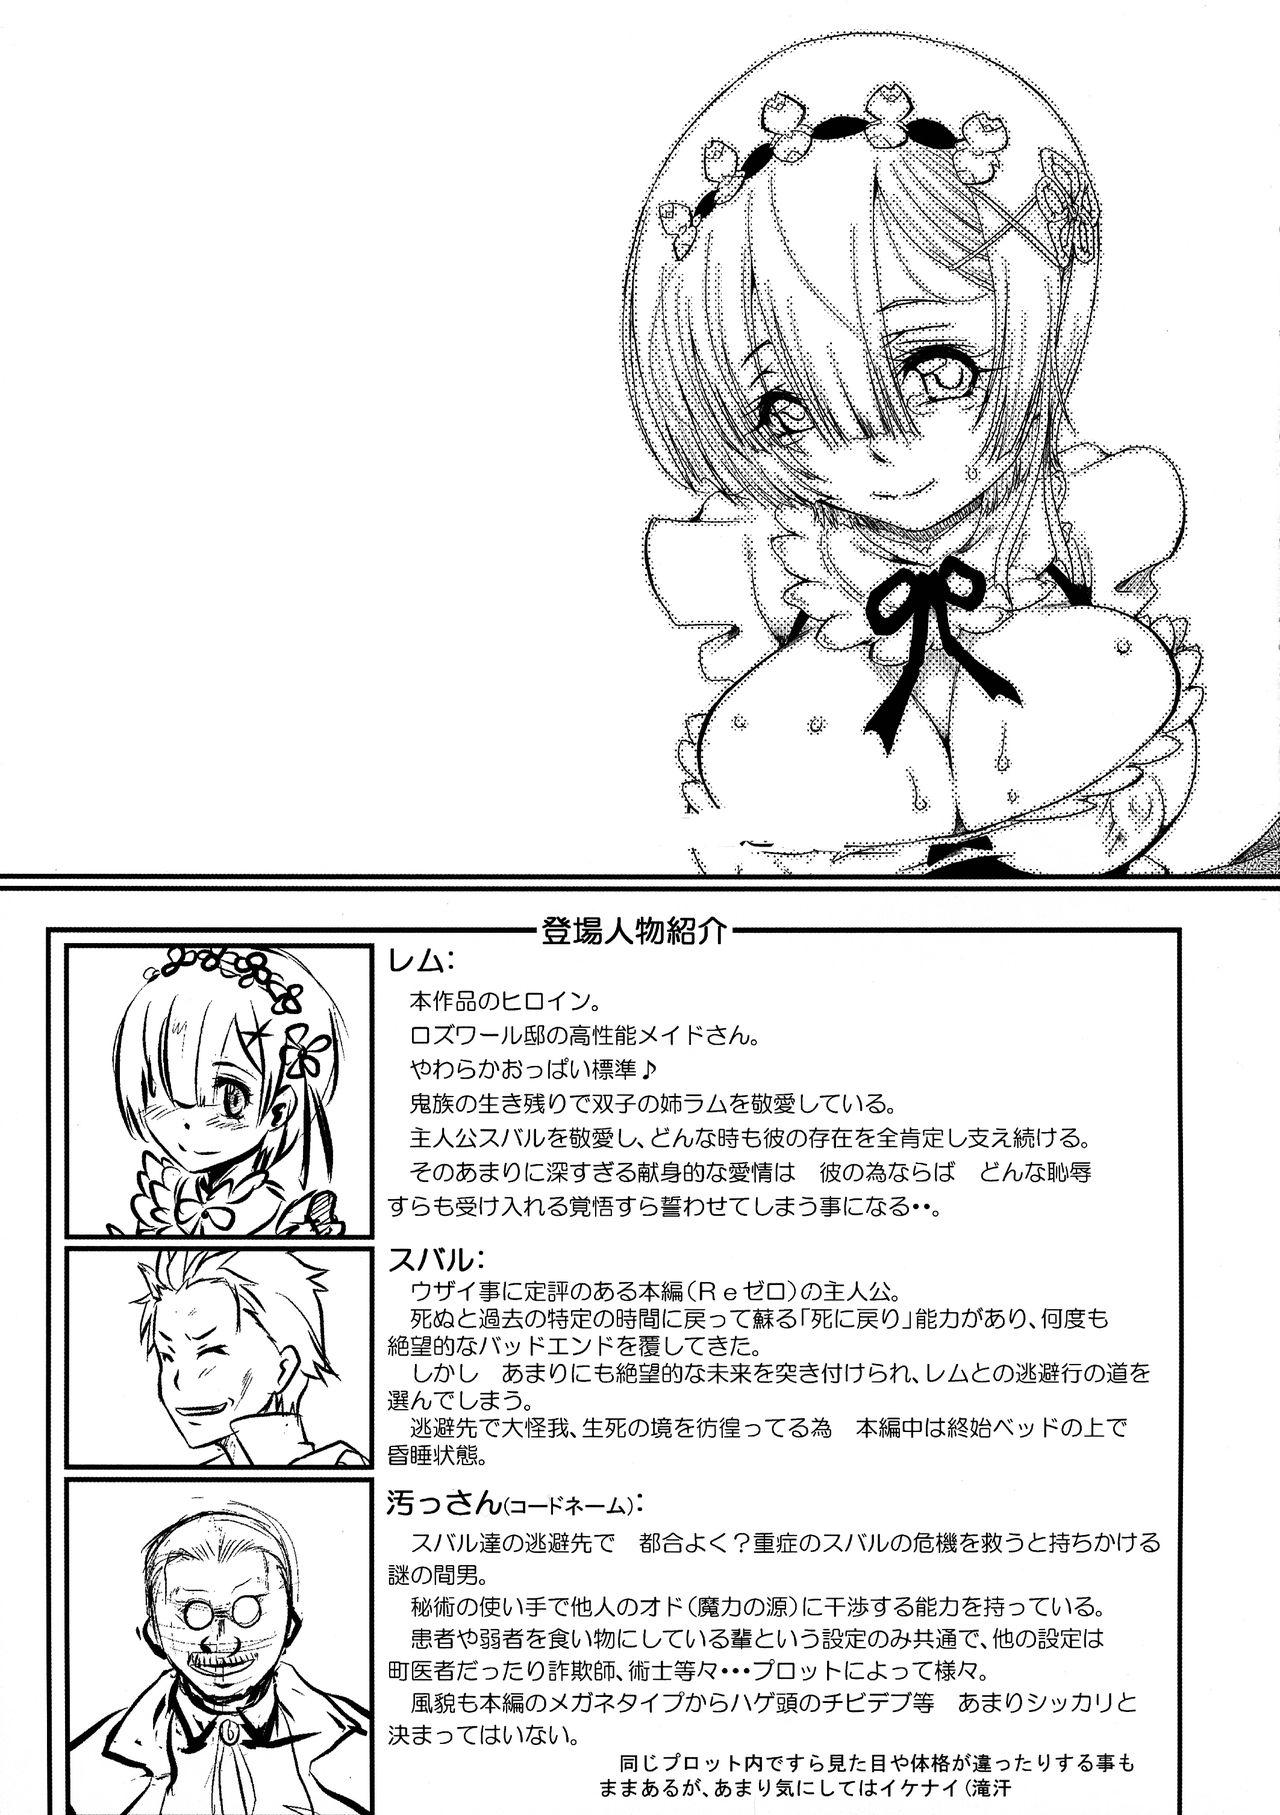 First (C96) [Furuya (TAKE)] Rem - Danshou - Natsuki Rem no Eromanga (Re:Zero kara Hajimeru Isekai Seikatsu) [English] - Re zero kara hajimeru isekai seikatsu Negra - Page 4